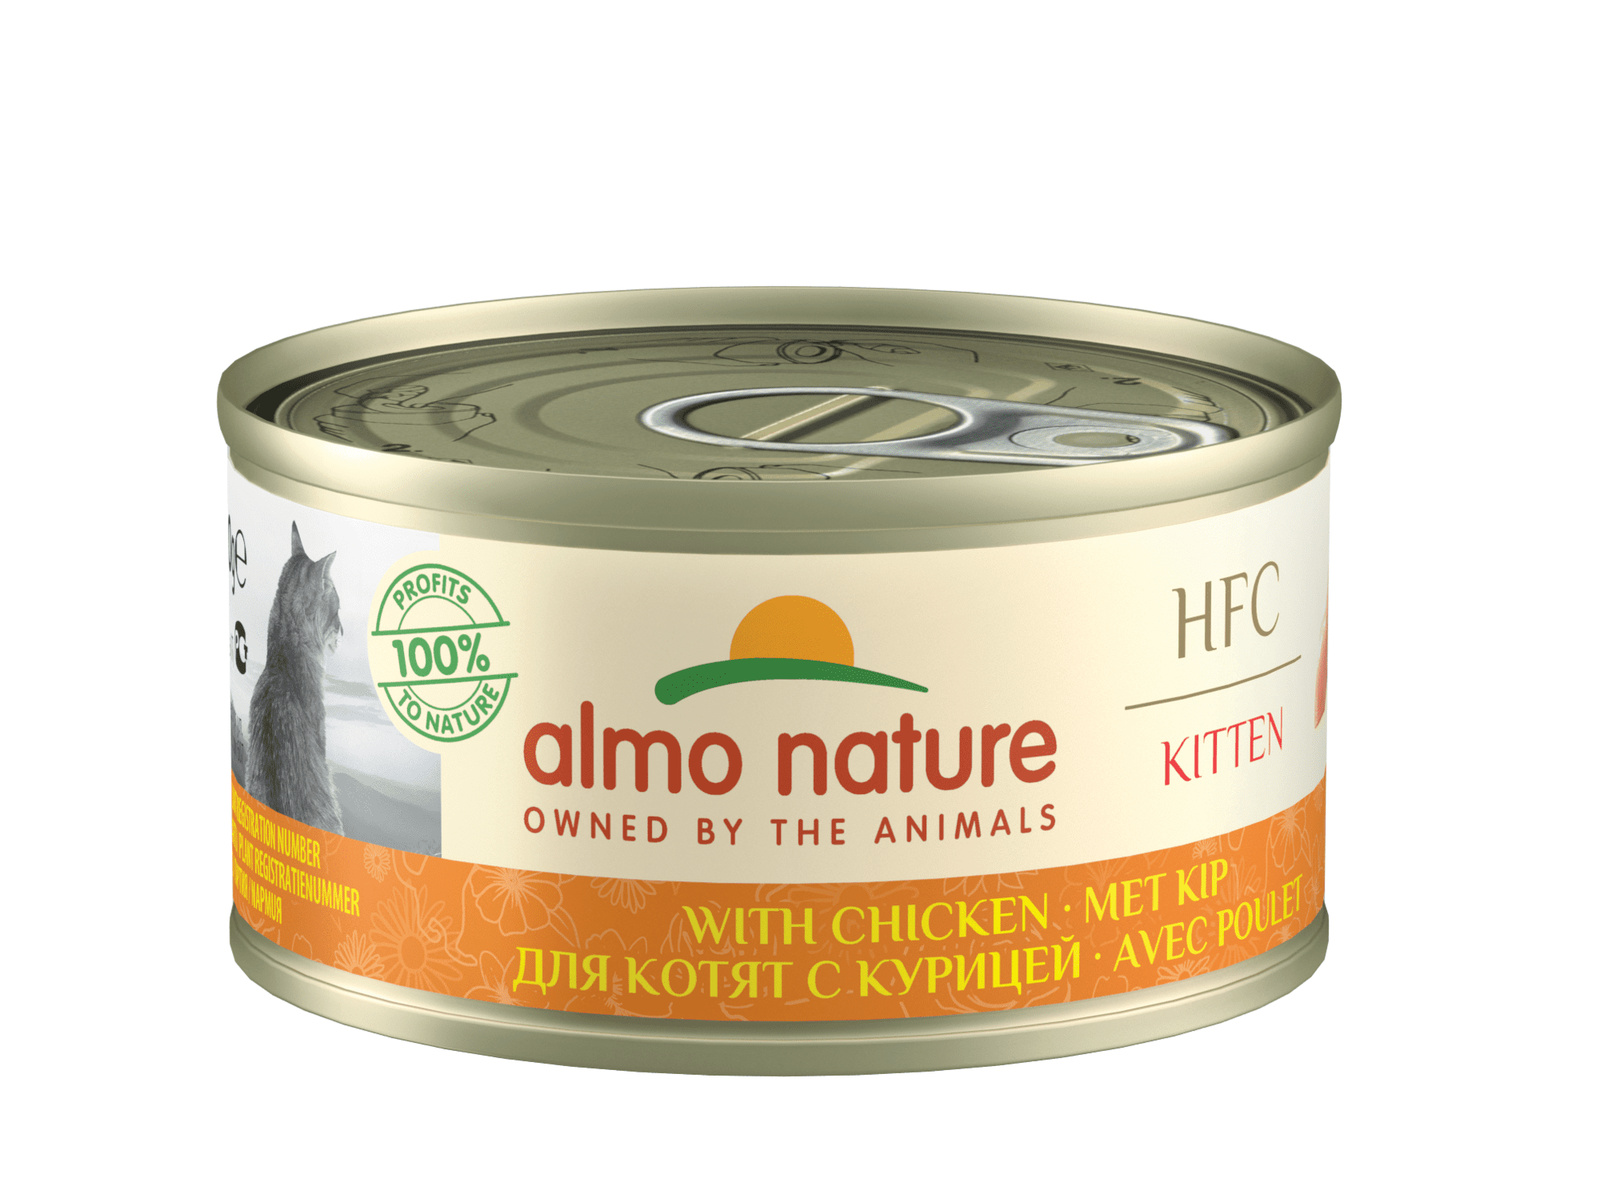 Almo Nature консервы Almo Nature консервы для котят, с курицей (70 г) консервы для кошек almo nature legend с курицей и сыром 75% 70 г